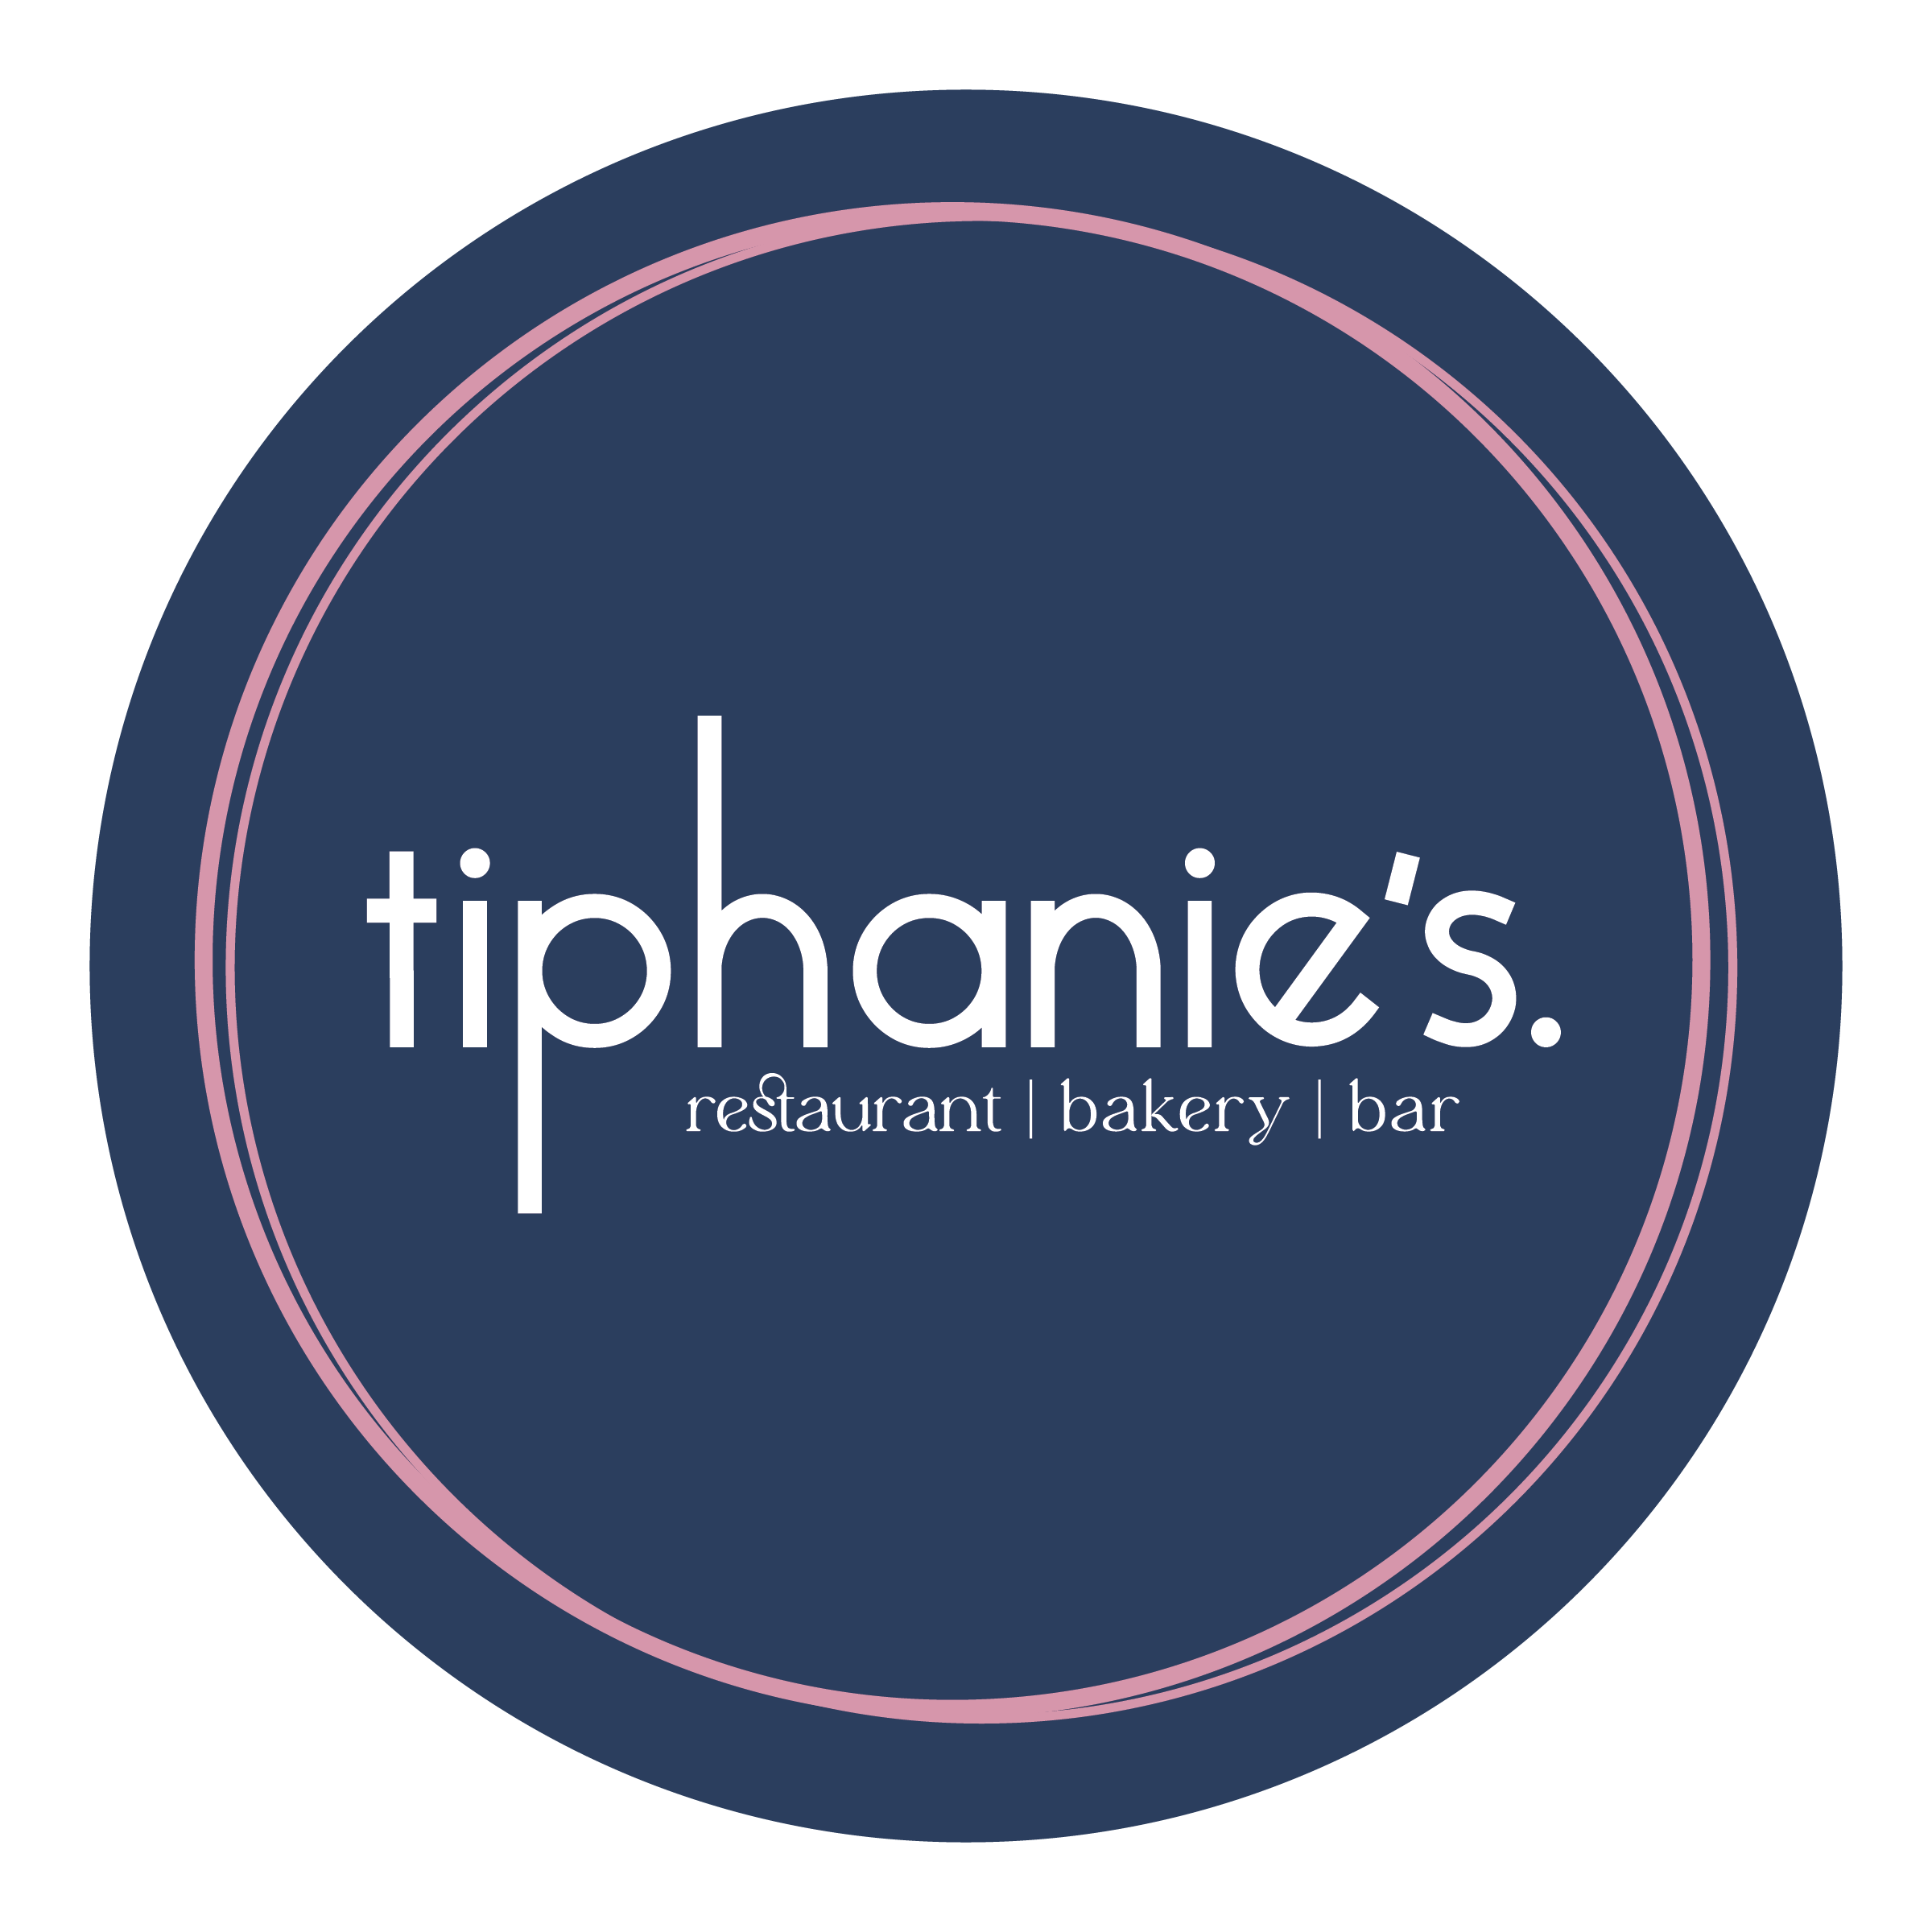 Tiphanie's logo scroll